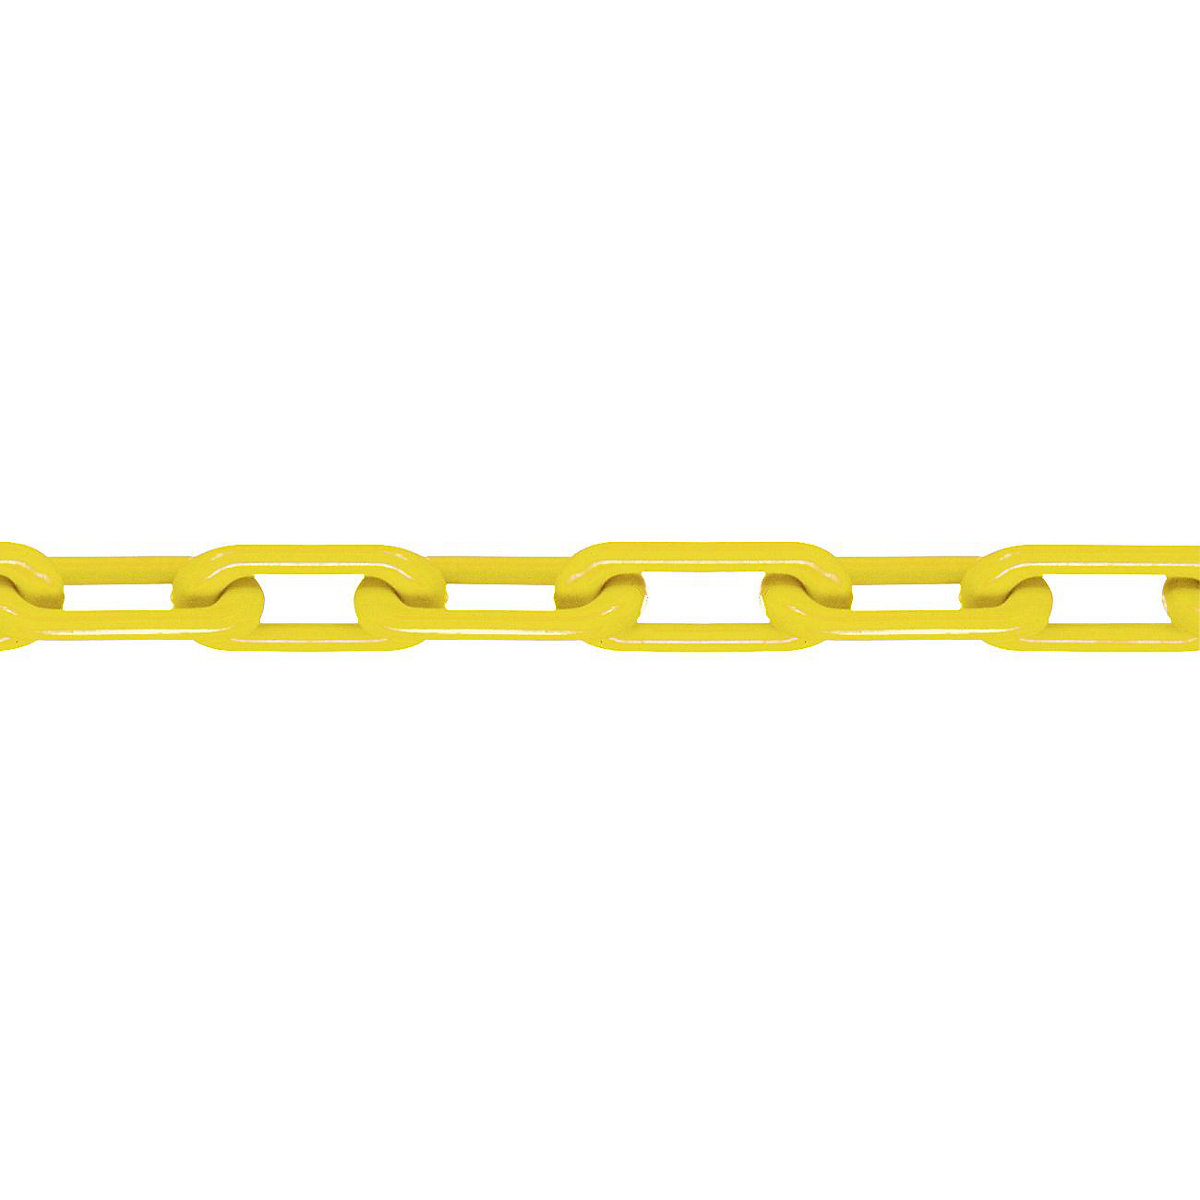 Kvalitetni najlonski lanac, kvaliteta MNK 8, dužina sklopa 25 m, u žutoj boji-6